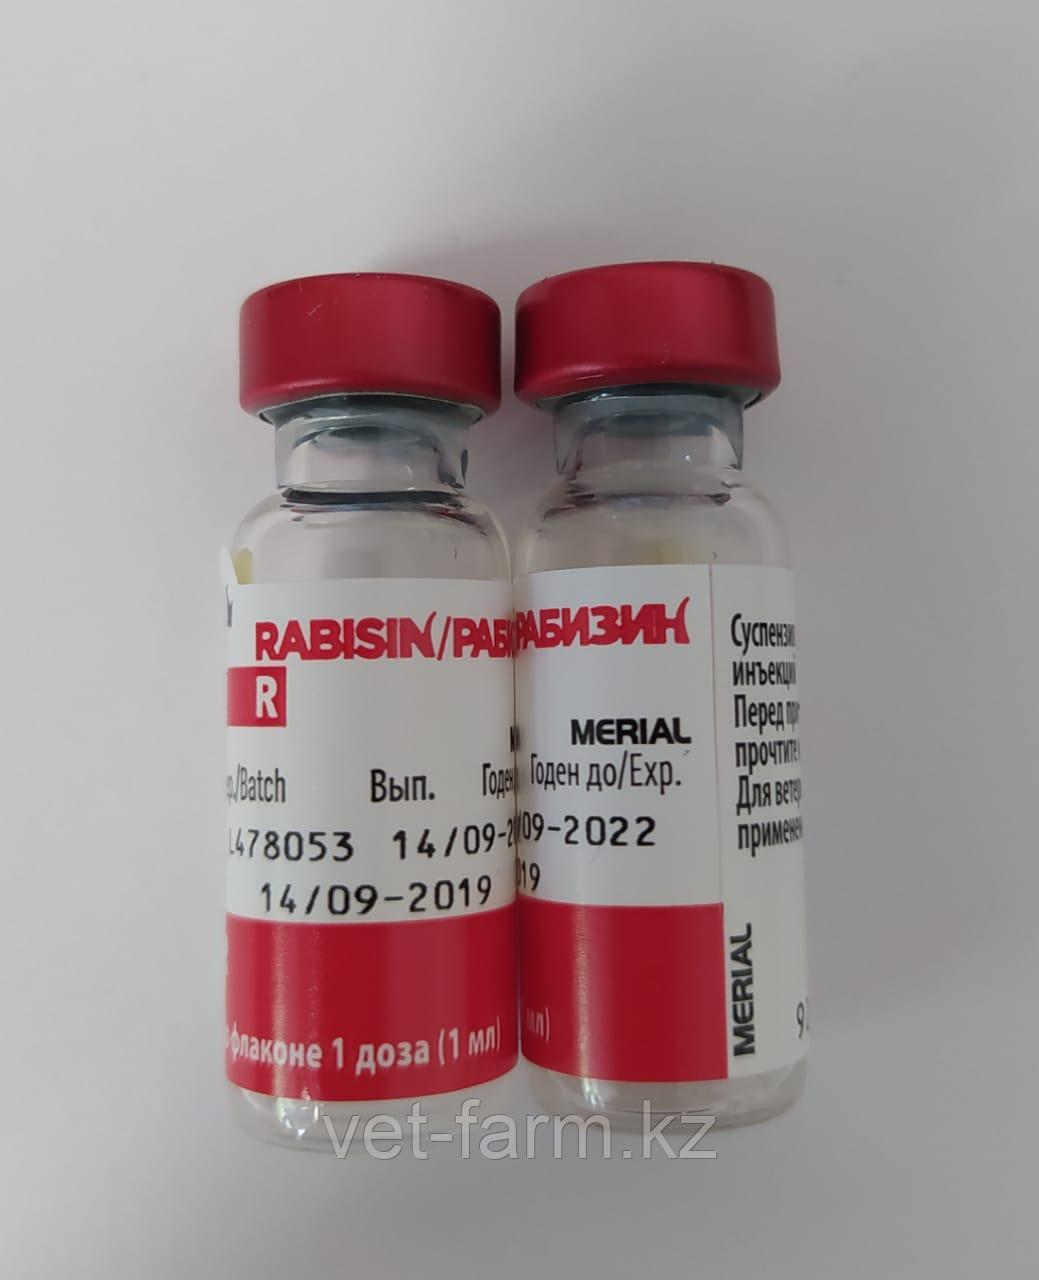 Вакцина Рабизин для профилактики бешенства у животных 1 мл